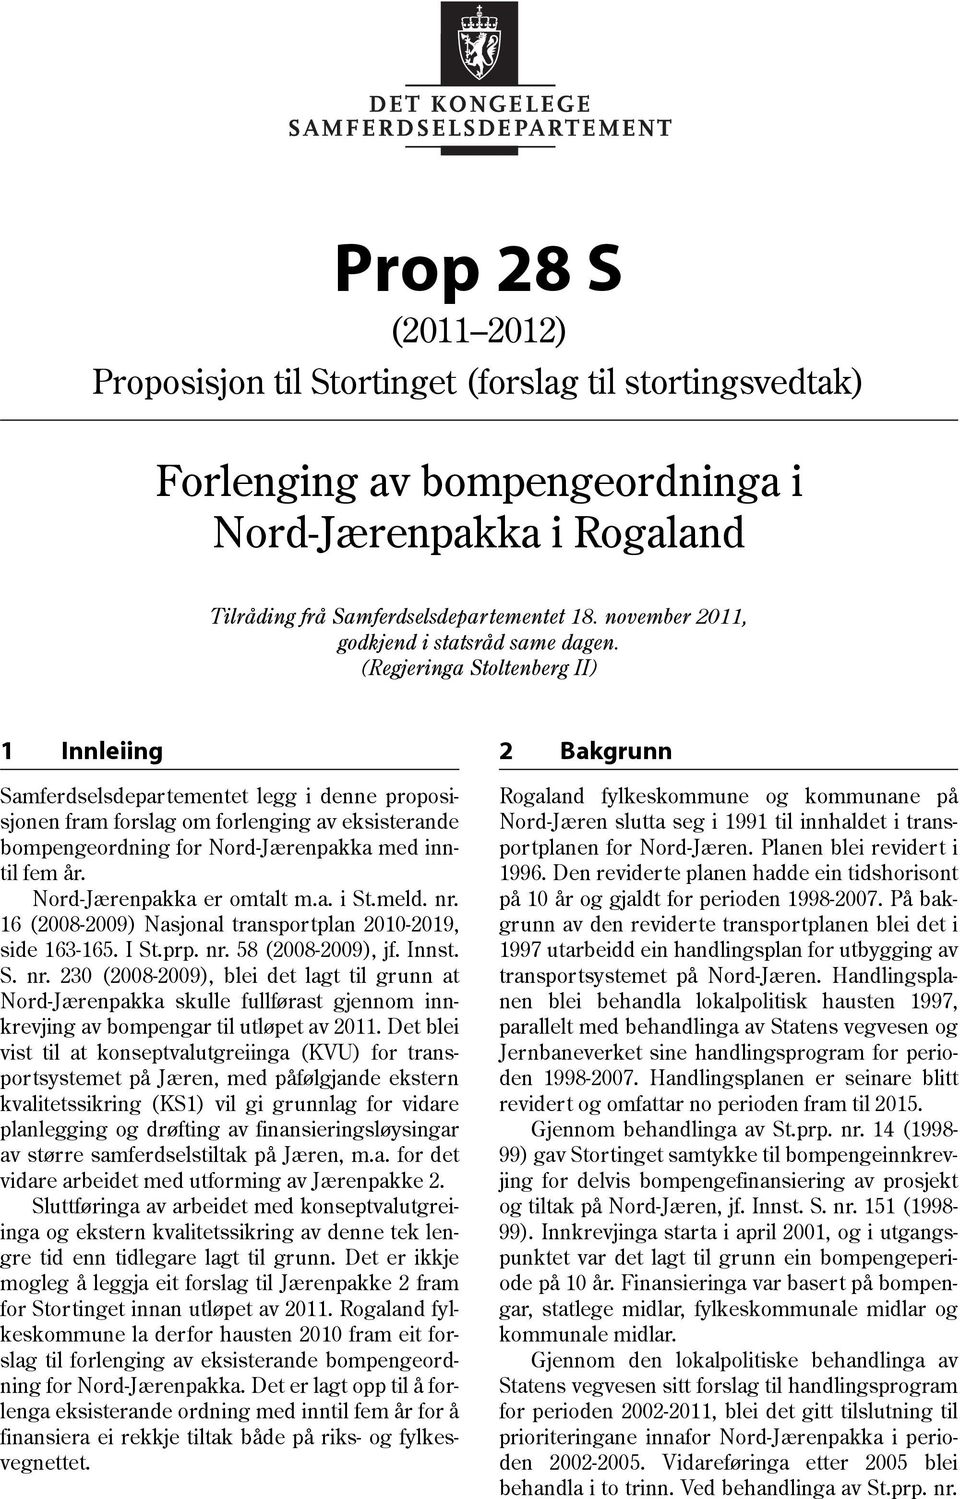 (Regjeringa Stoltenberg II) 1 Innleiing Samferdselsdepartementet legg i denne proposisjonen fram forslag om forlenging av eksisterande bompengeordning for Nord-Jærenpakka med inntil fem år.